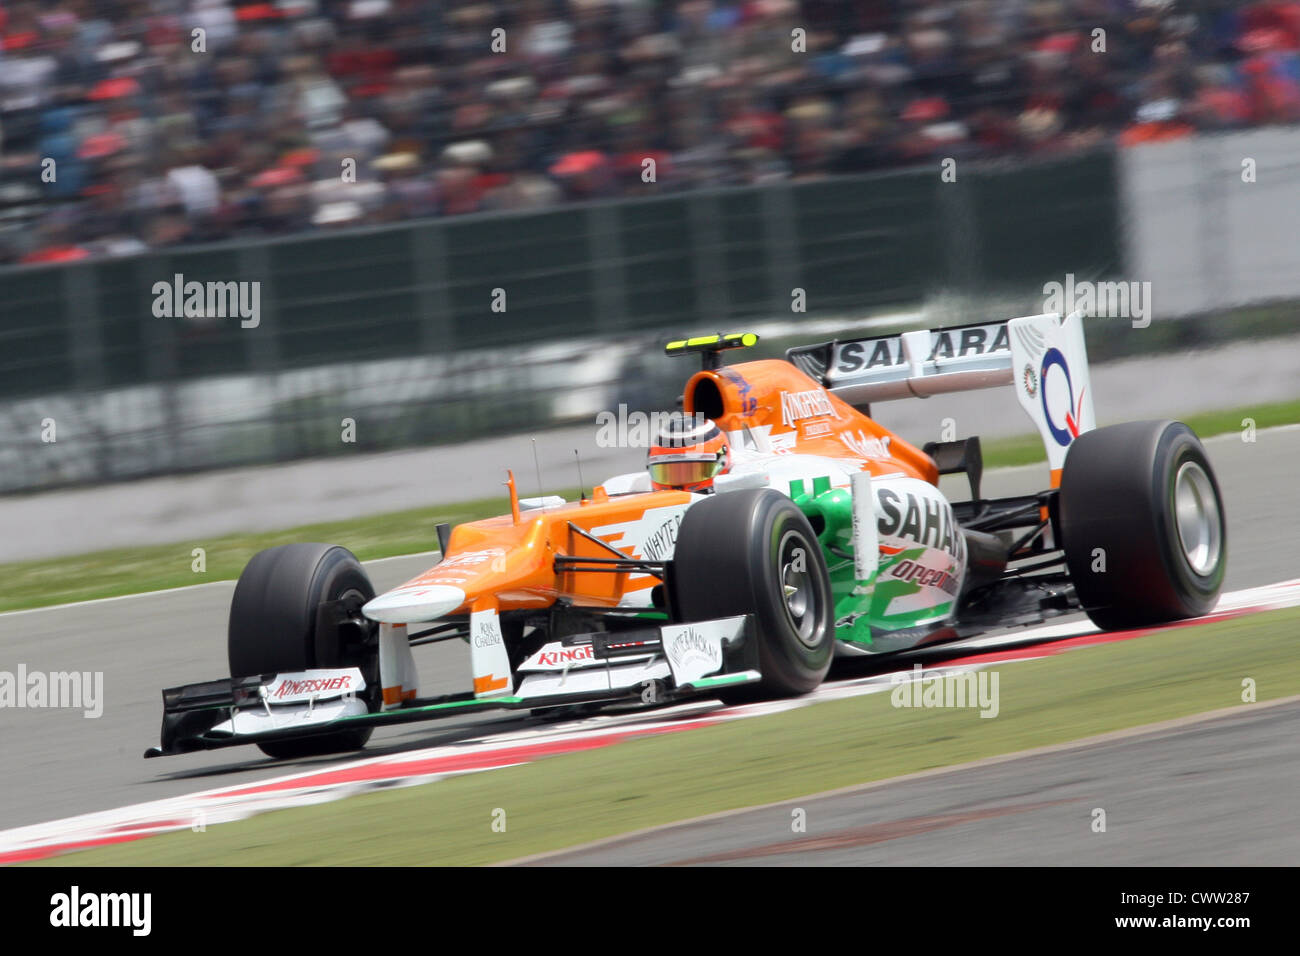 Nico Hulkenberg (Force India F1) Gran Premio di Gran Bretagna a Silverstone nel Regno Unito. Formula Uno, F1 Foto Stock